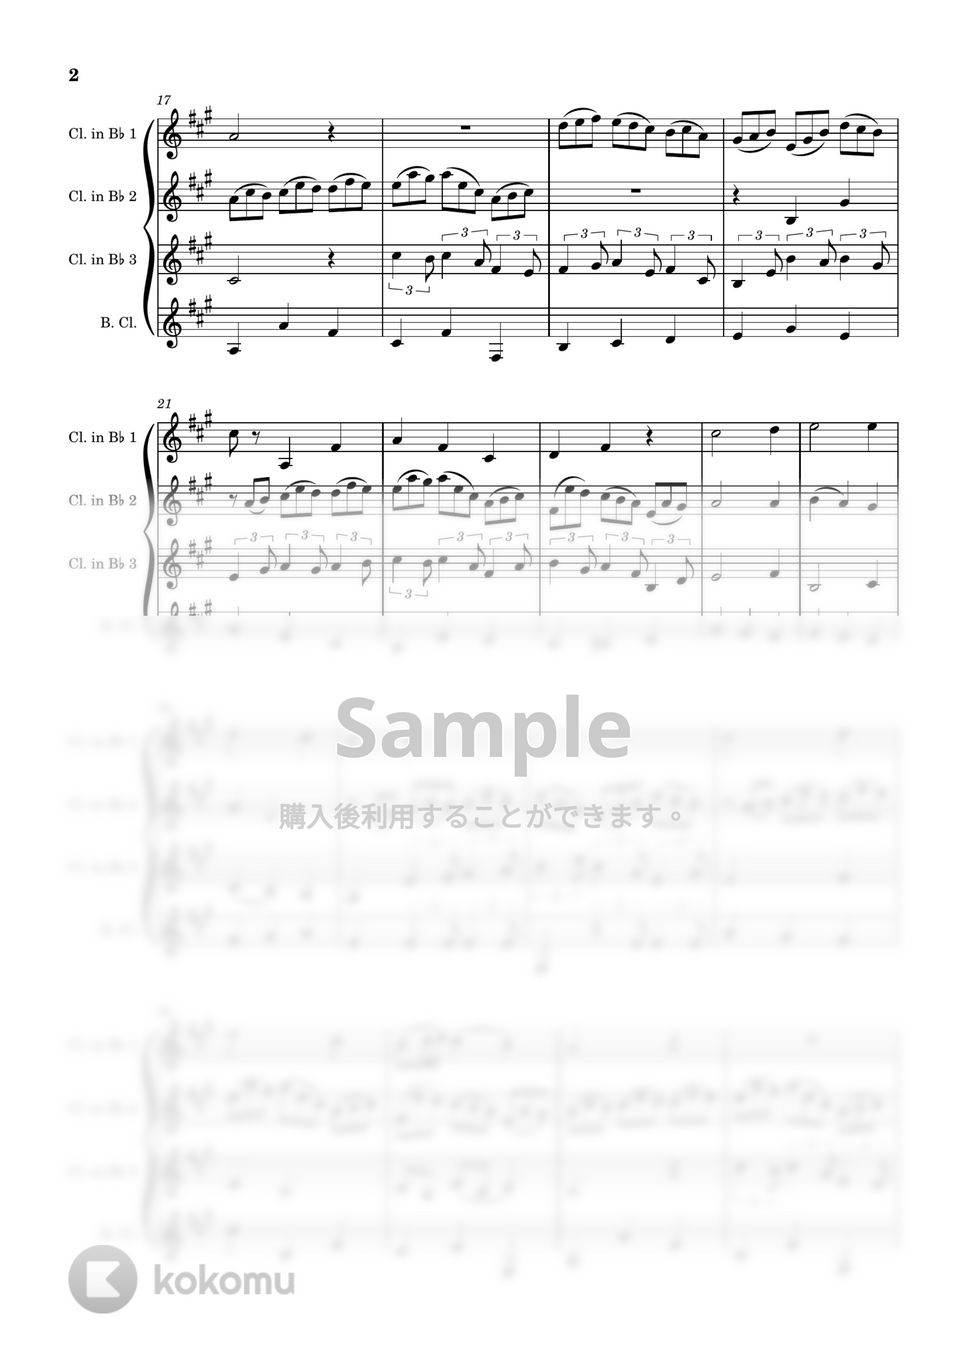 J.S.Bach - 主よ、人の望みの喜びよ (クラリネット四重奏) by 川上龍